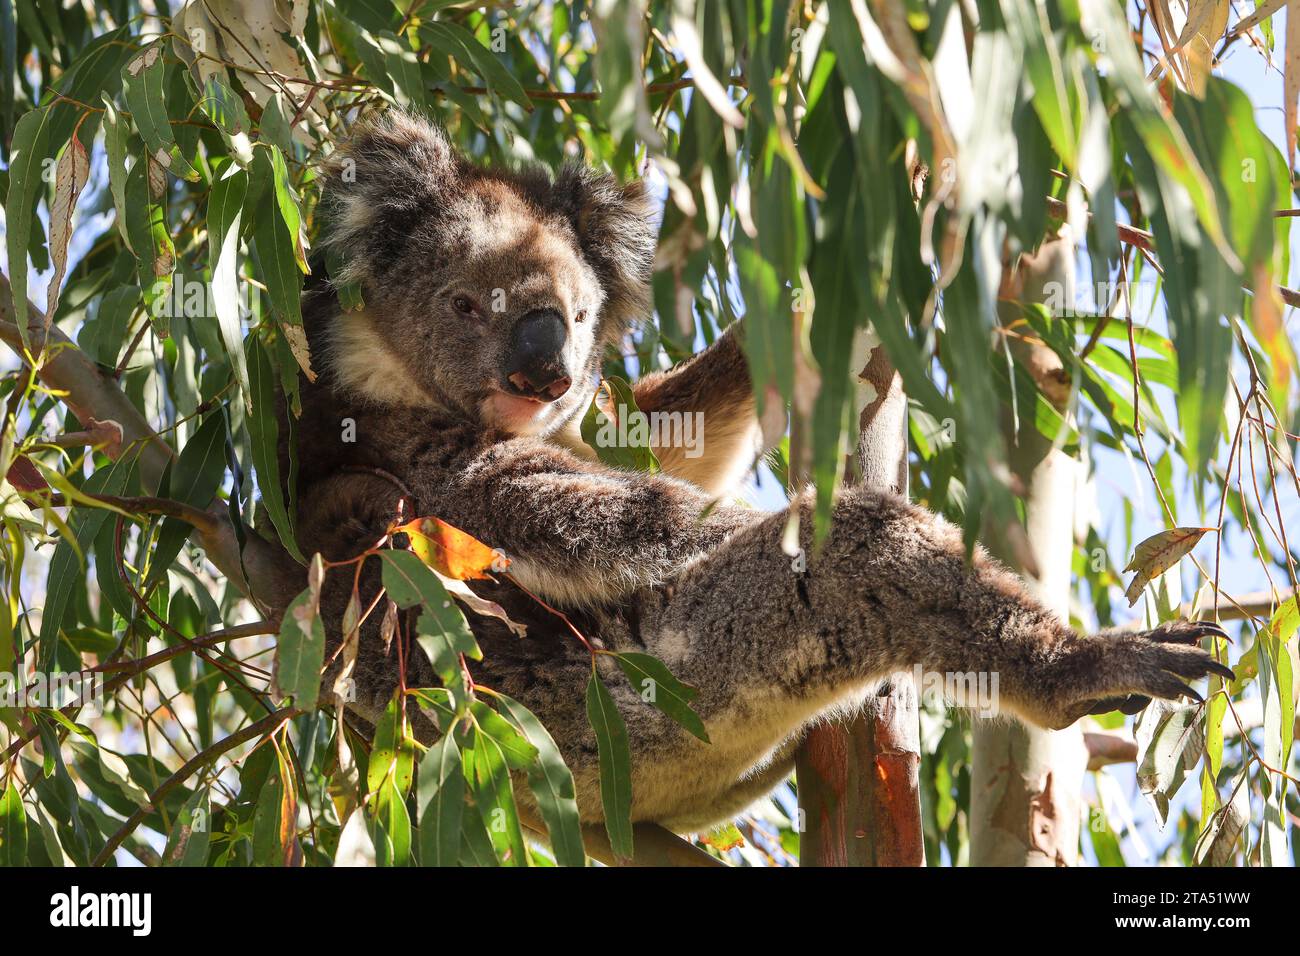 Koala bear looking relaxed on an eucalyptus tree Stock Photo